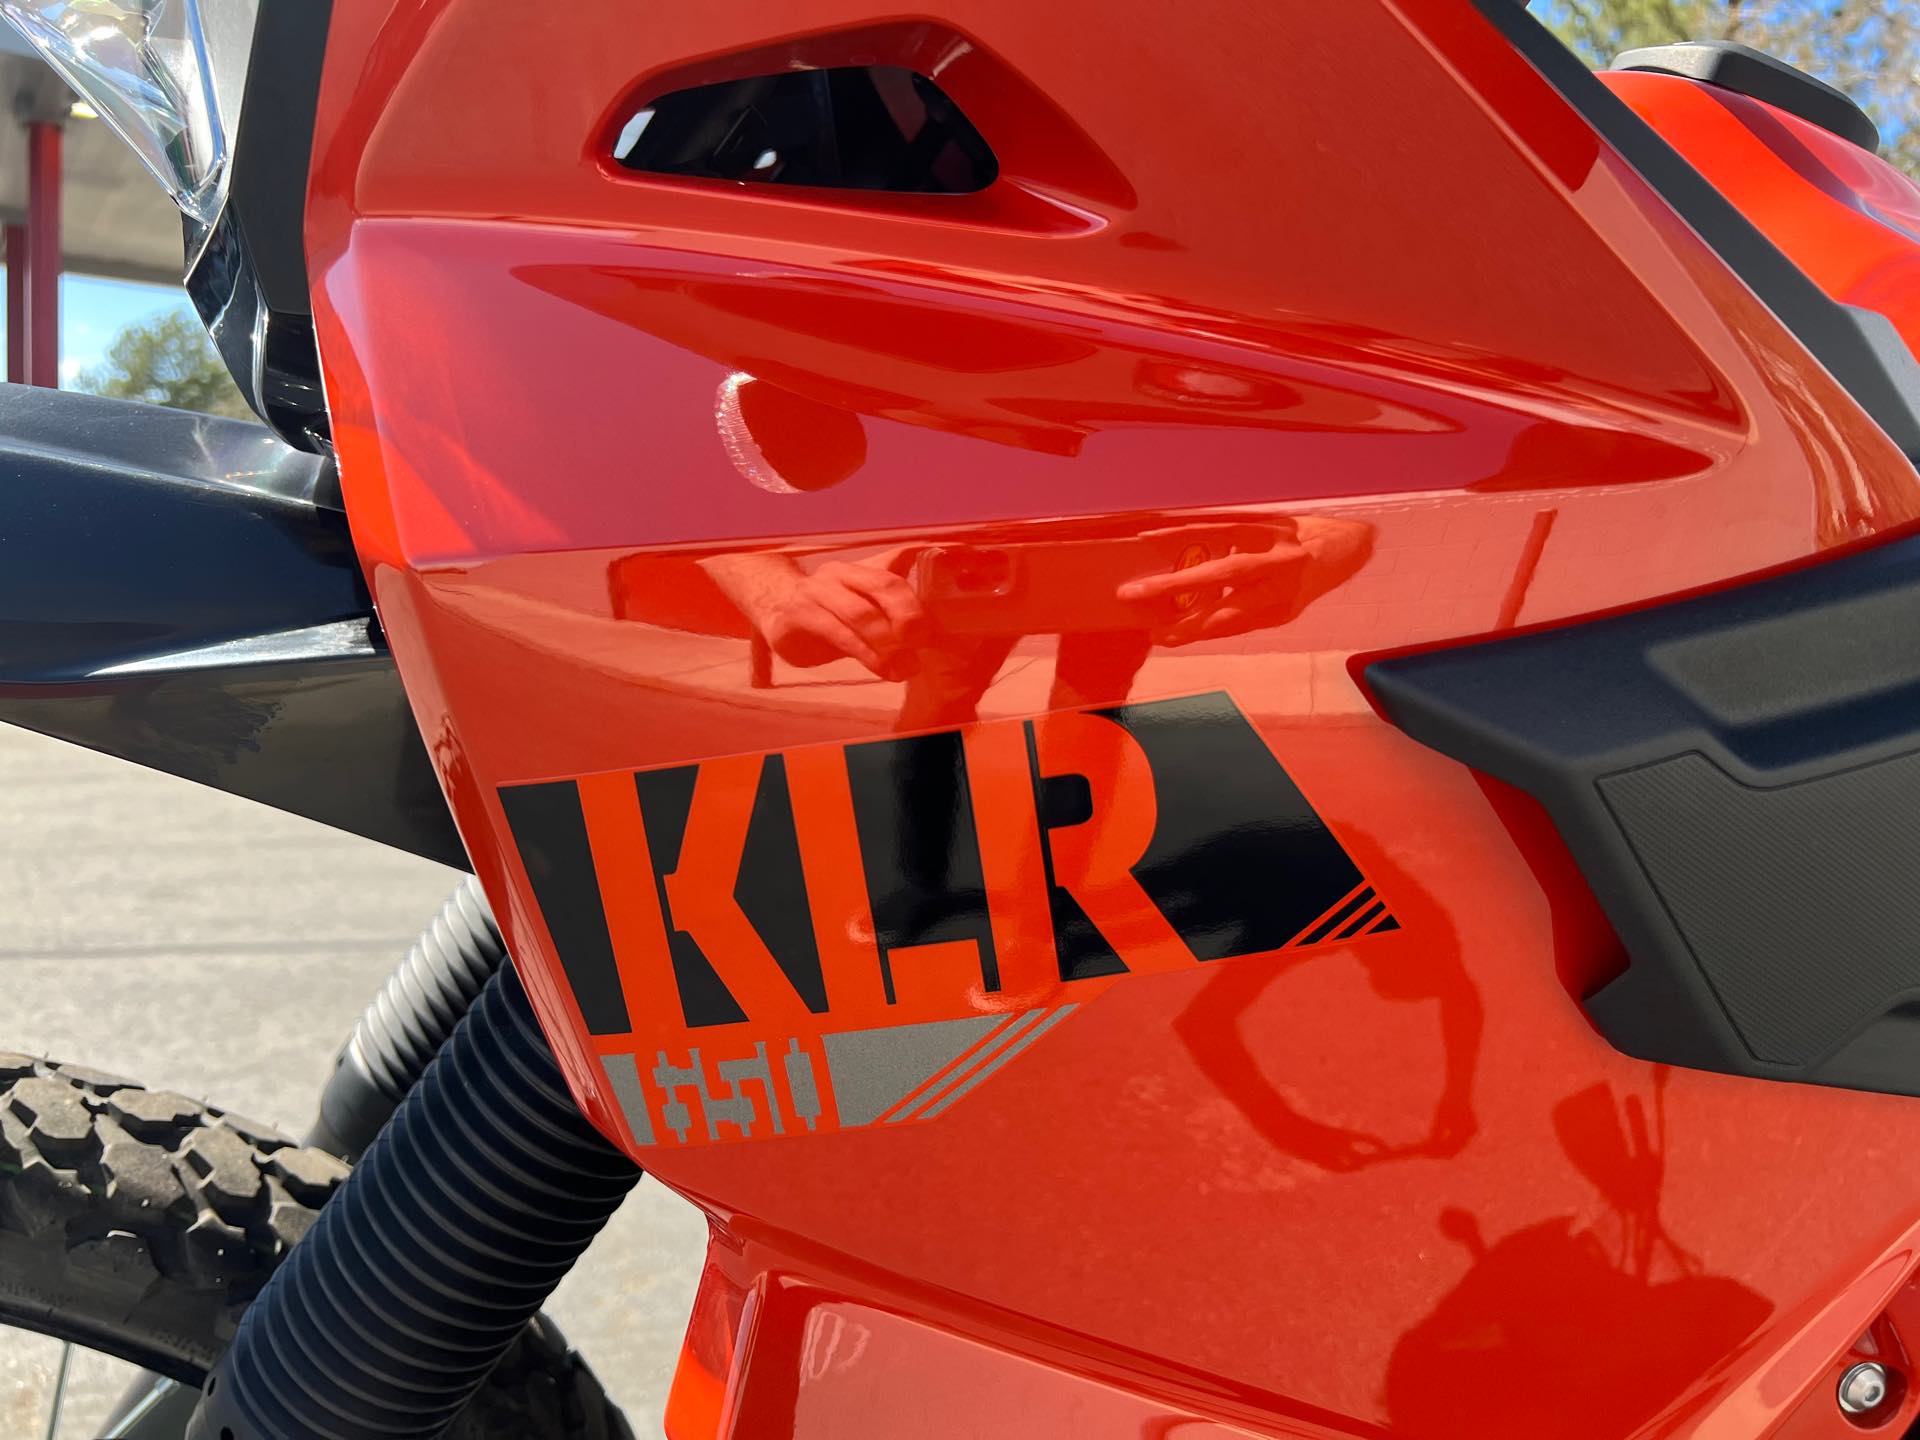 2022 Kawasaki KLR 650 at Aces Motorcycles - Fort Collins